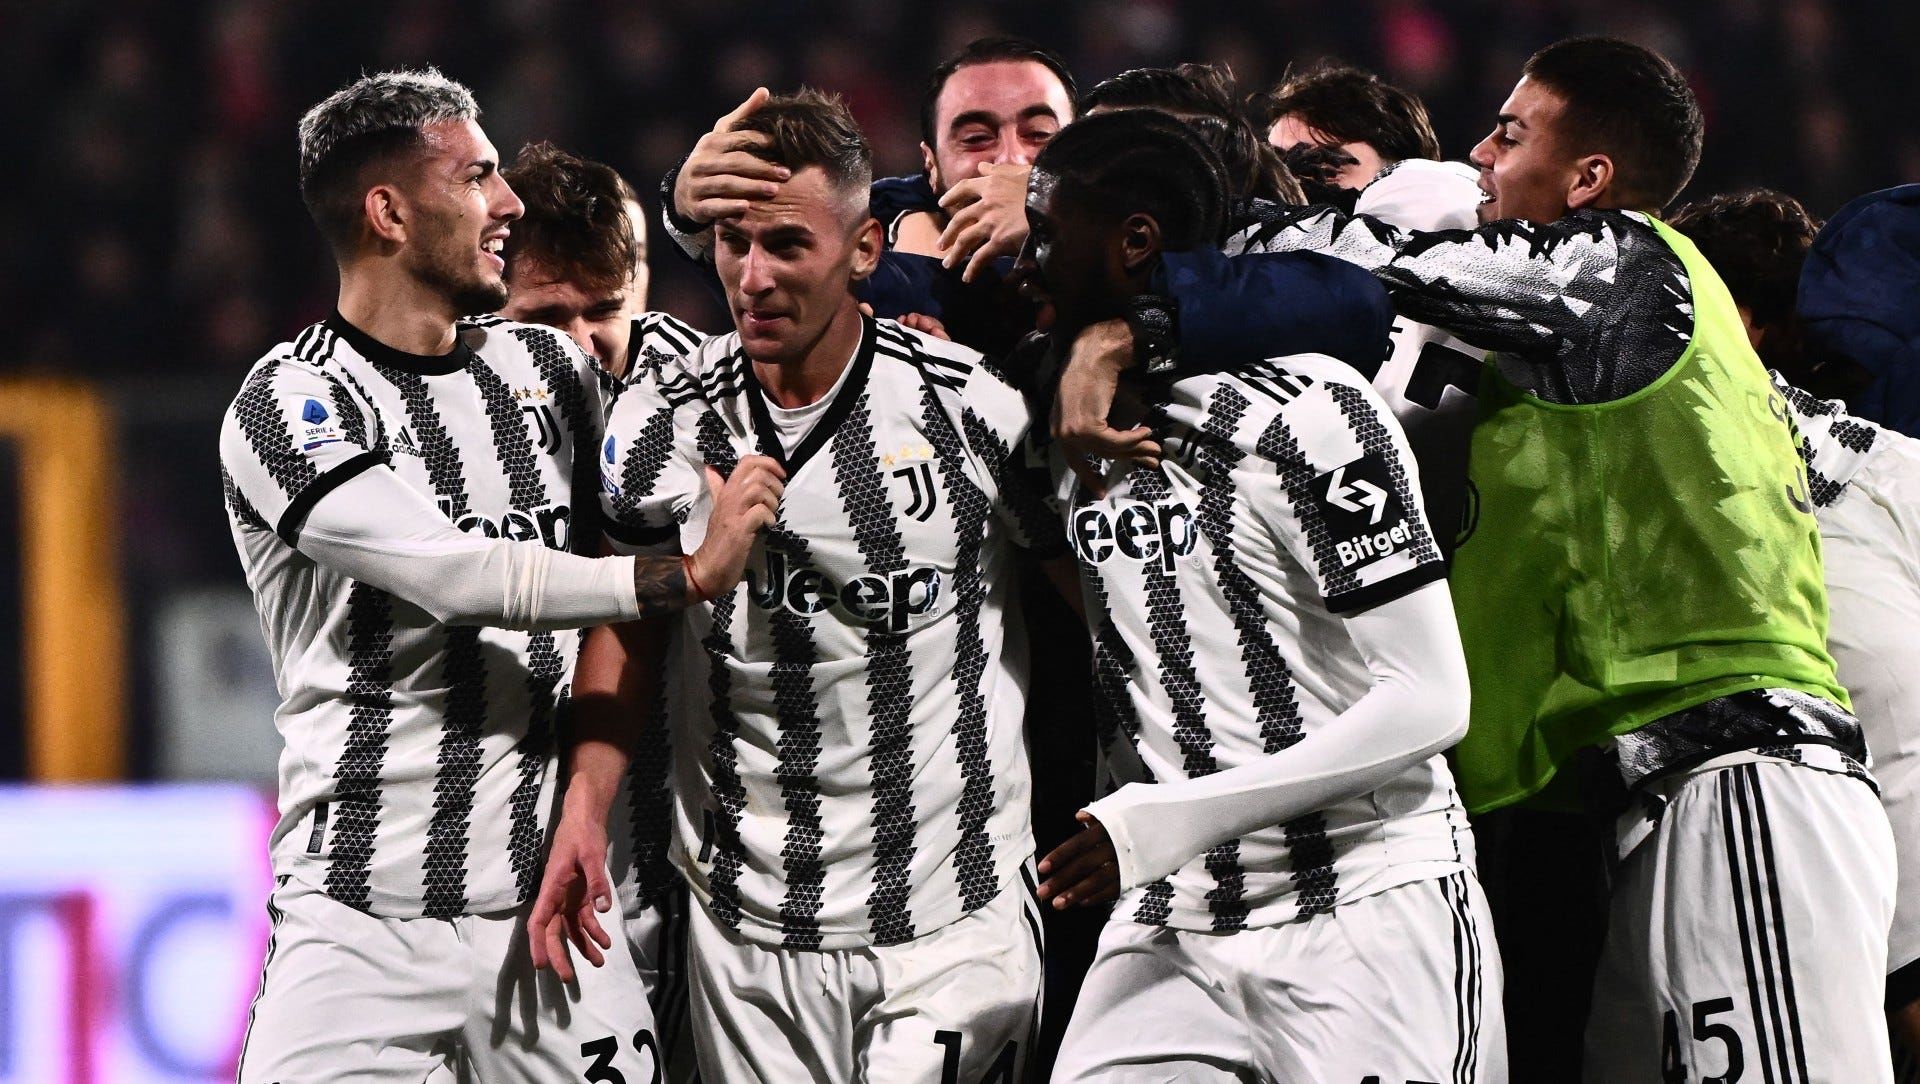 Los planes de la Juventus para el nuevo curso 